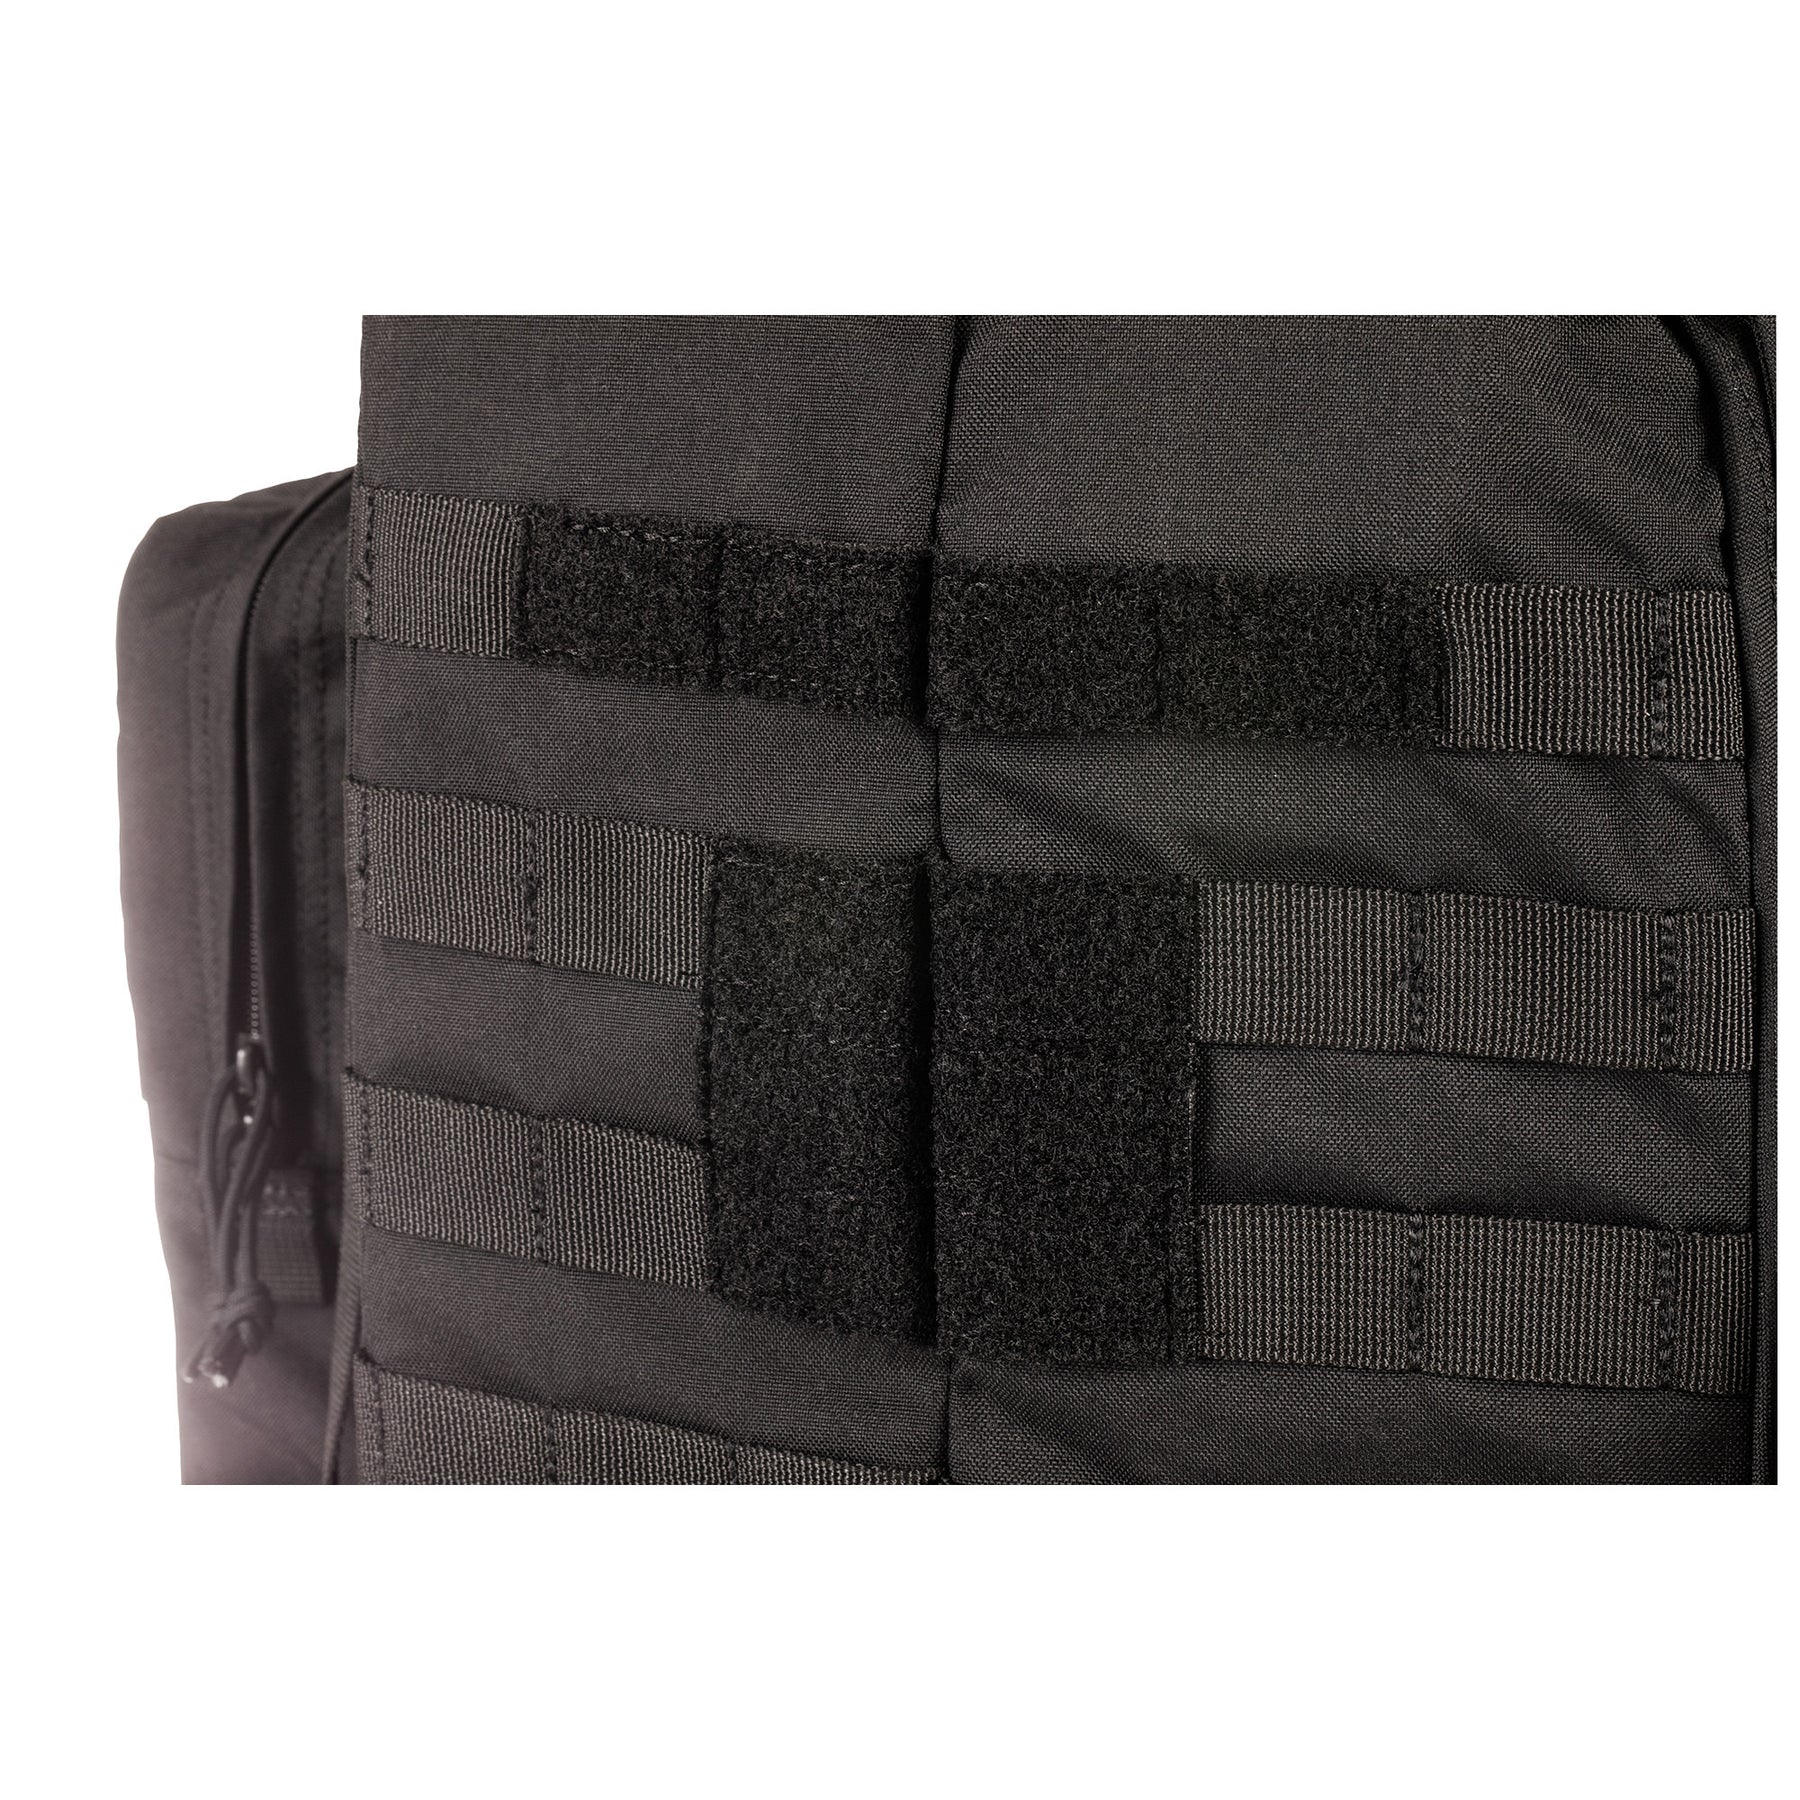 ZAINO RUSH100 60 litri di 5.11 Tactical Black (nero) - vista dettaglio velcro per patch e identificativo